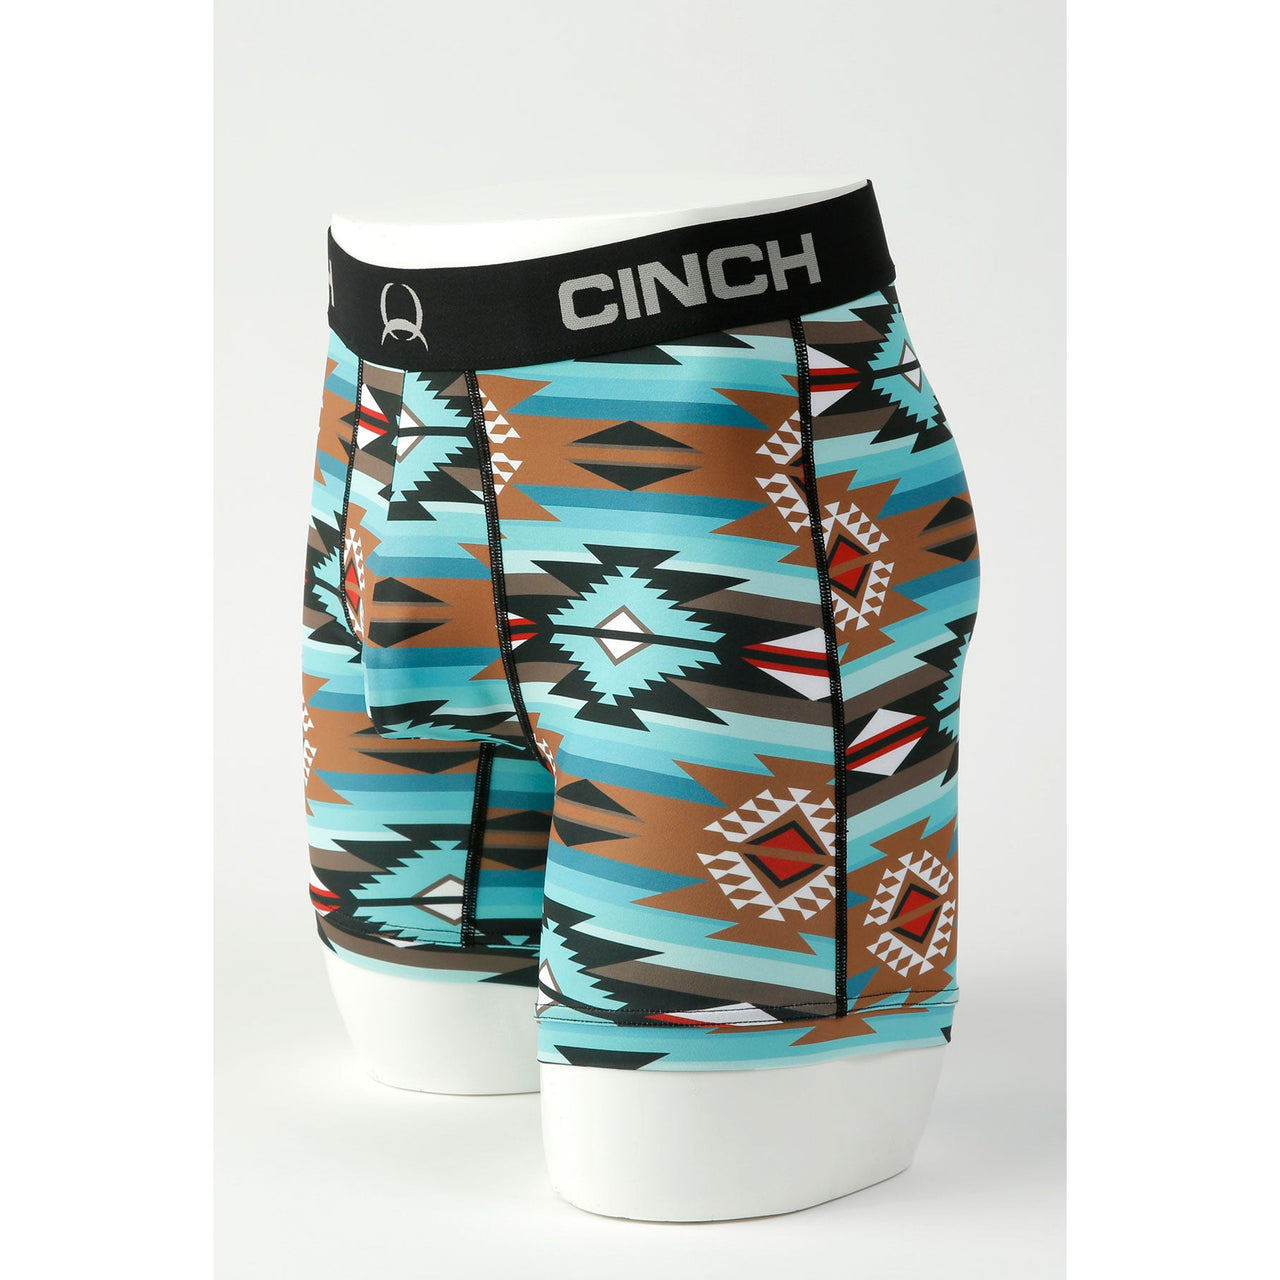 Cinch Men's 6" Aztec Boxer Briefs - Turquoise